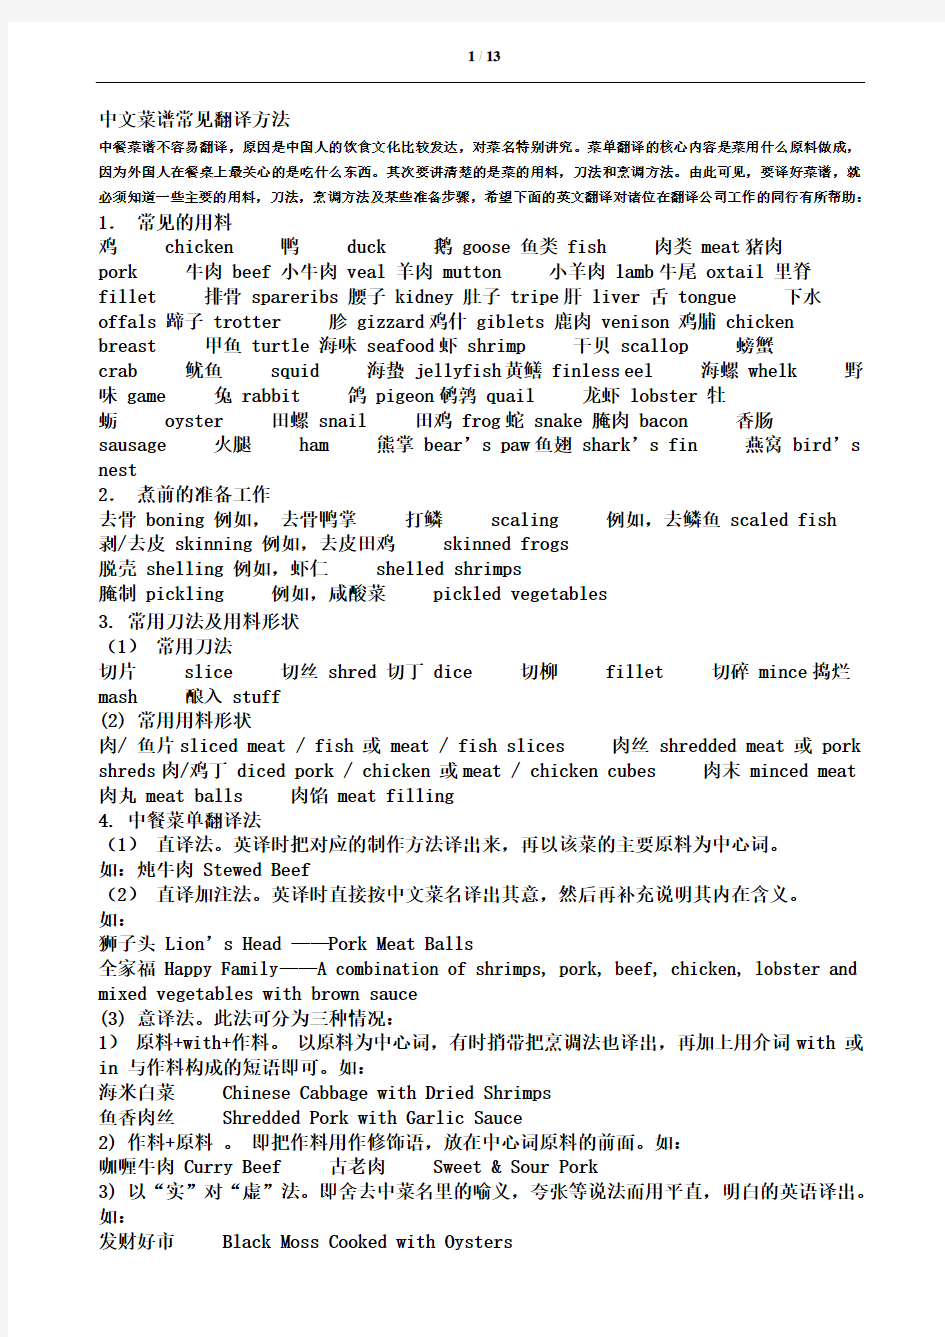 中文菜谱常见翻译方法解读